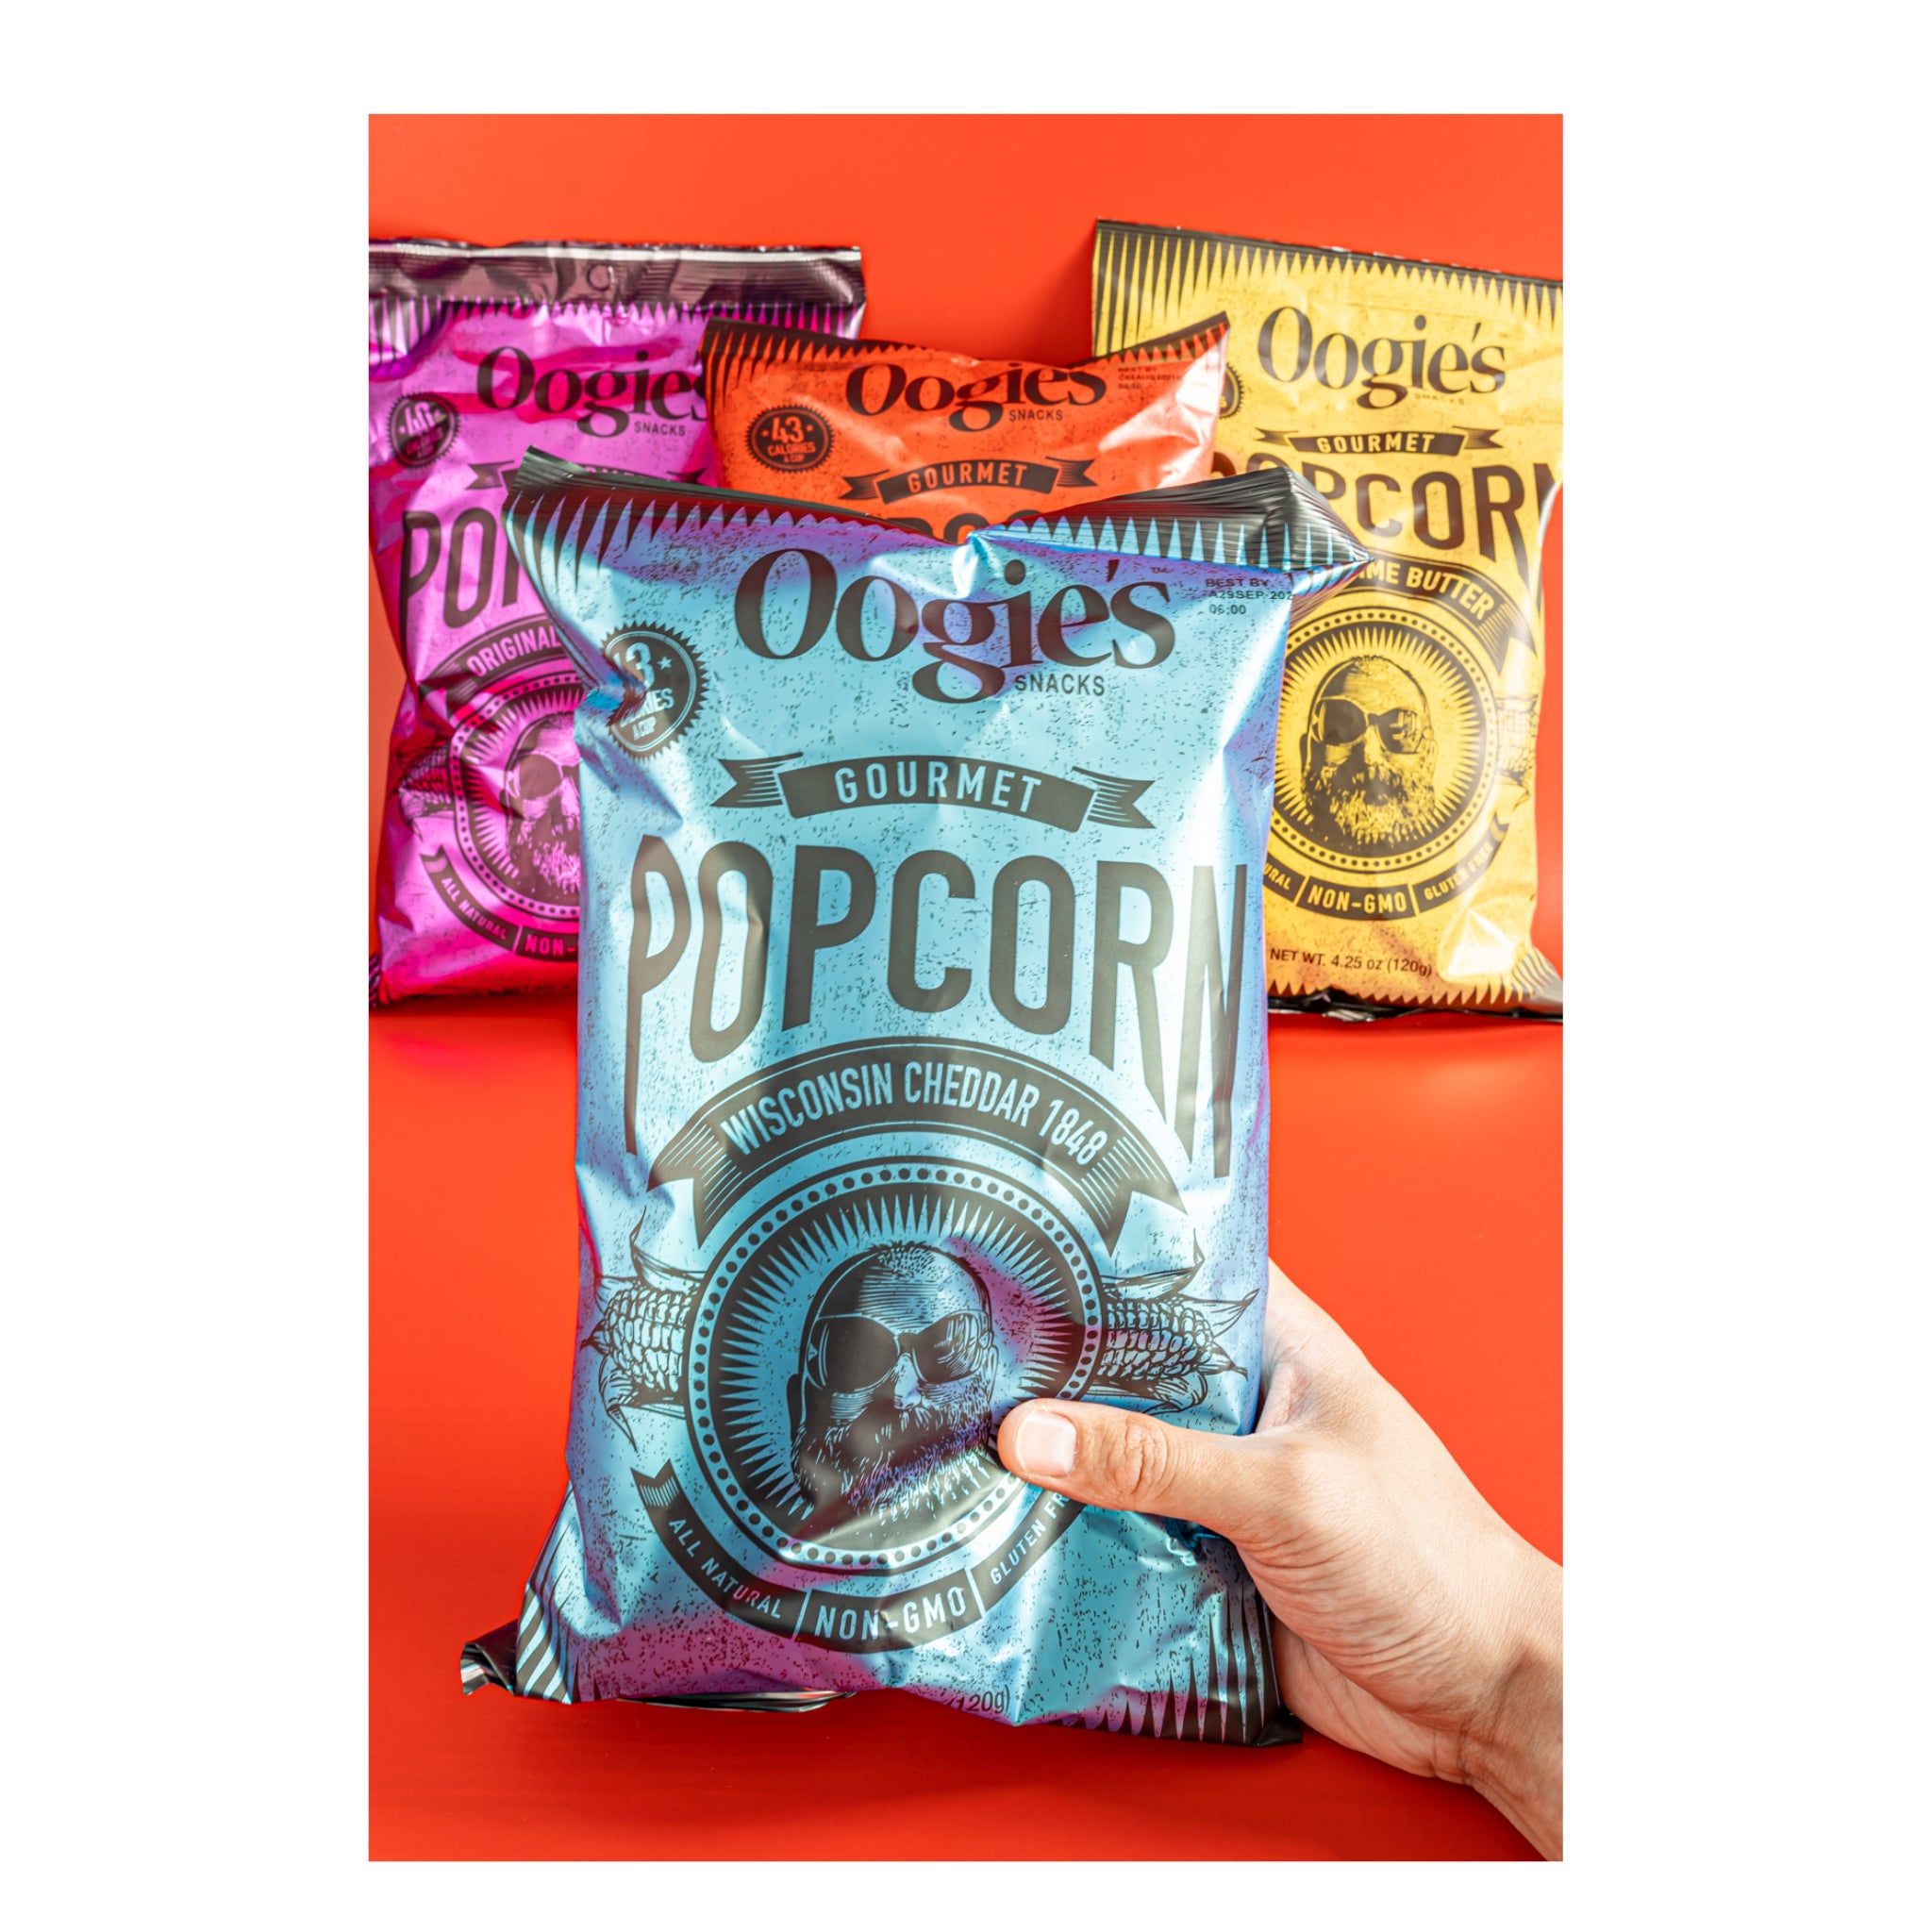 Four fan favorite Oogie's popcorn flavors